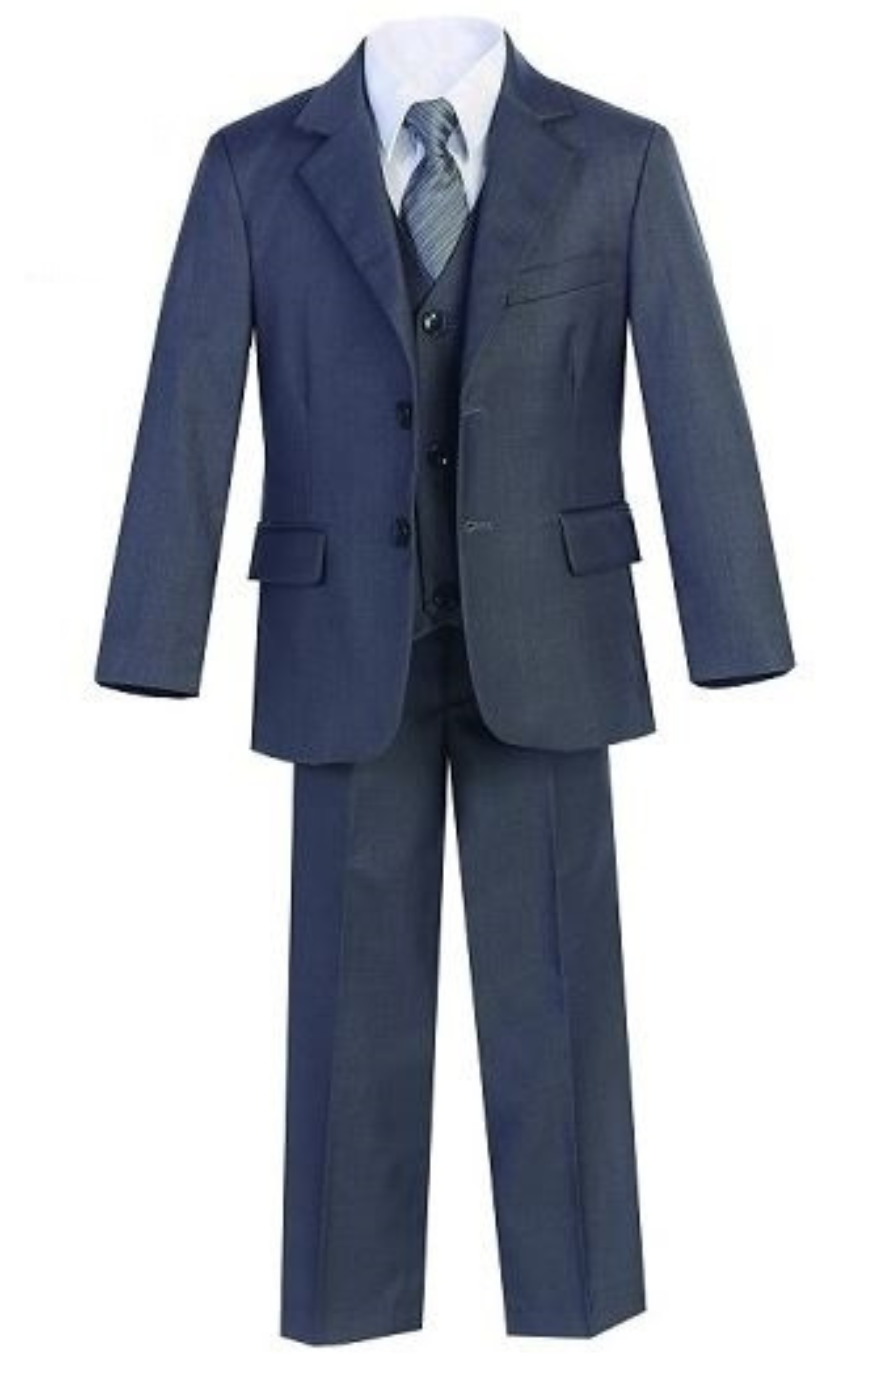 Harry 5pc Boys Suit: CHARCOAL (Slim Fit)